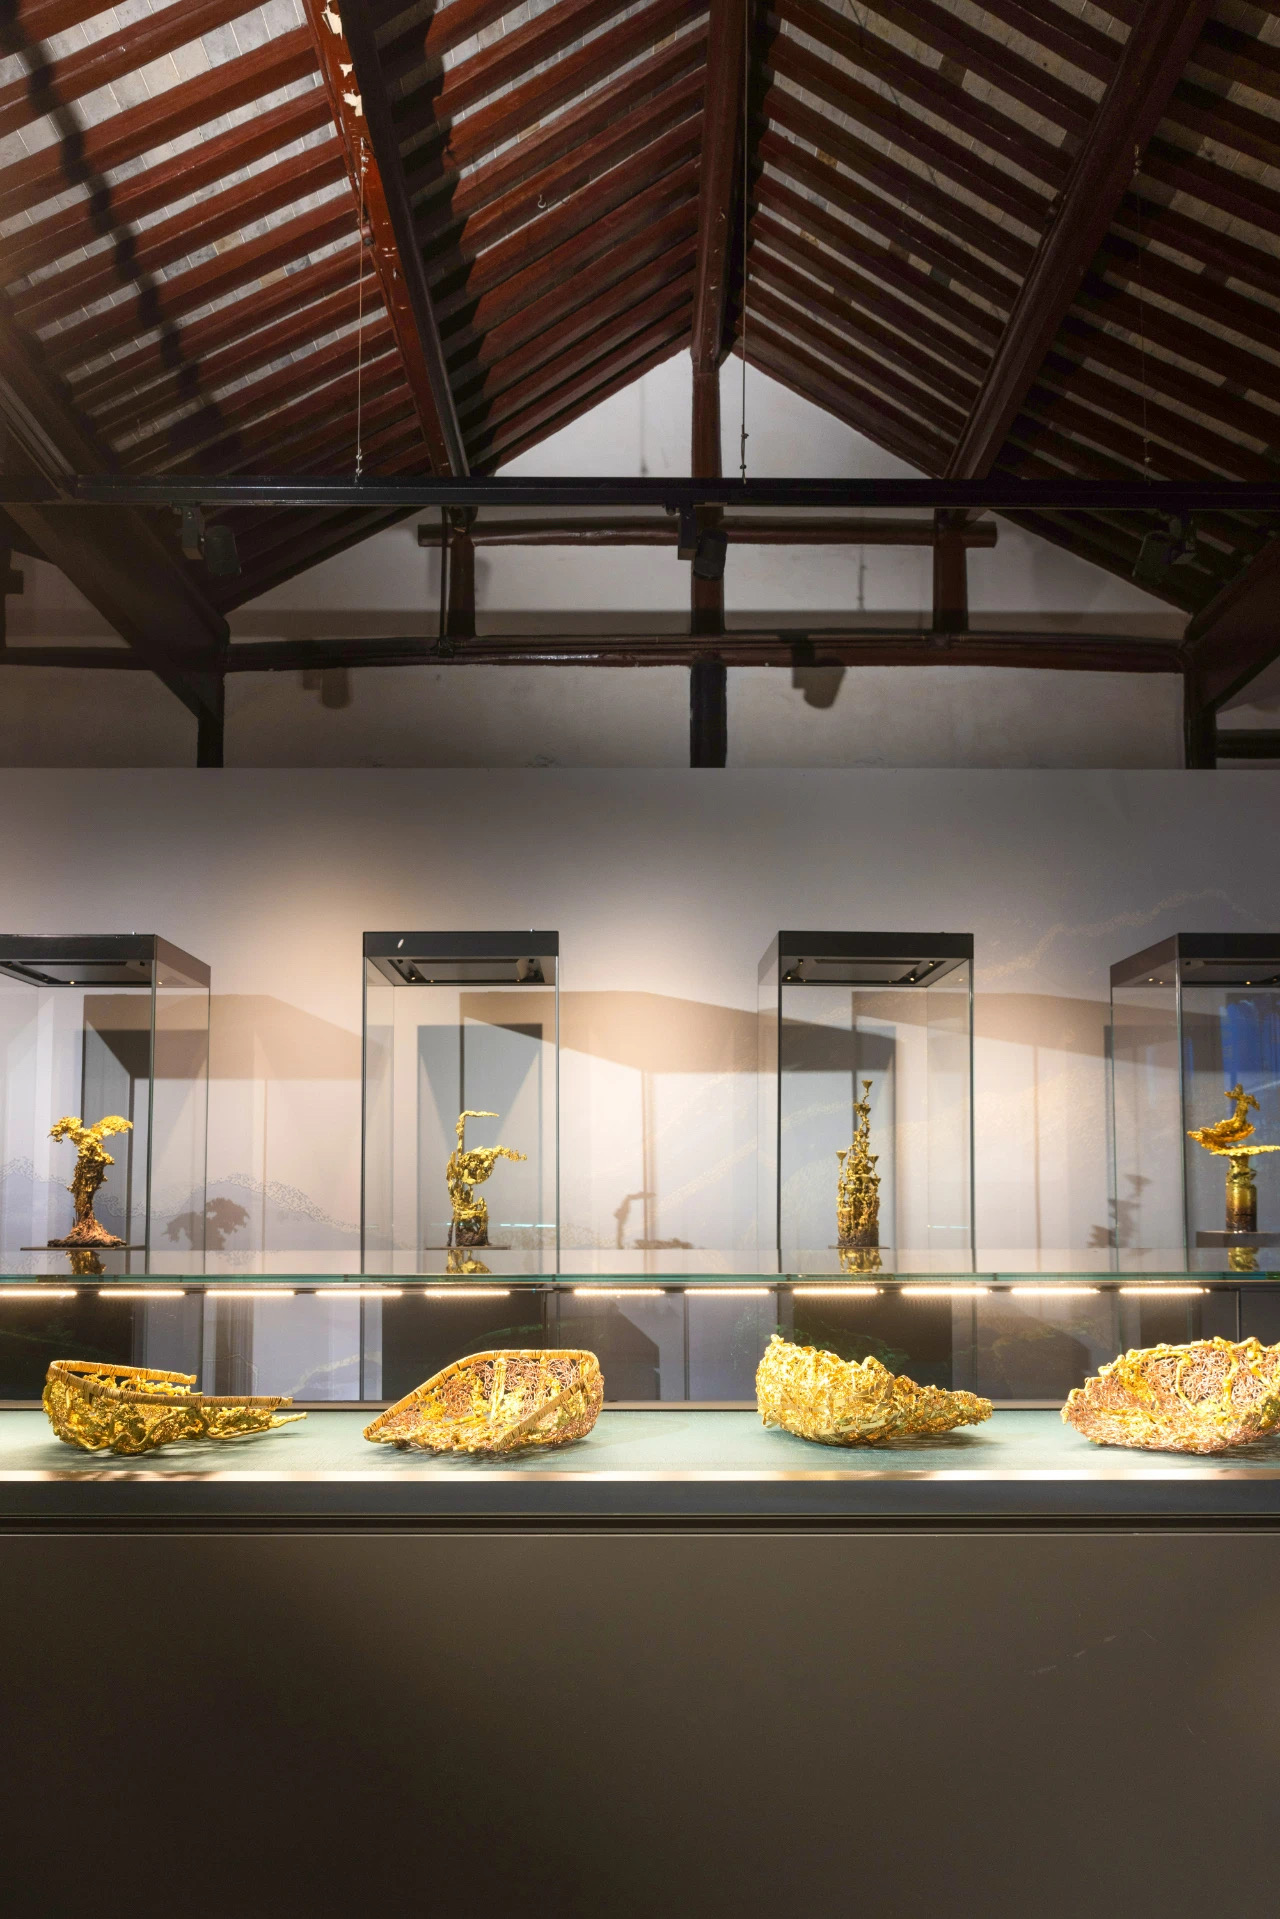 含苏量满满朱炳仁熔铜艺术展在苏州博物馆开幕